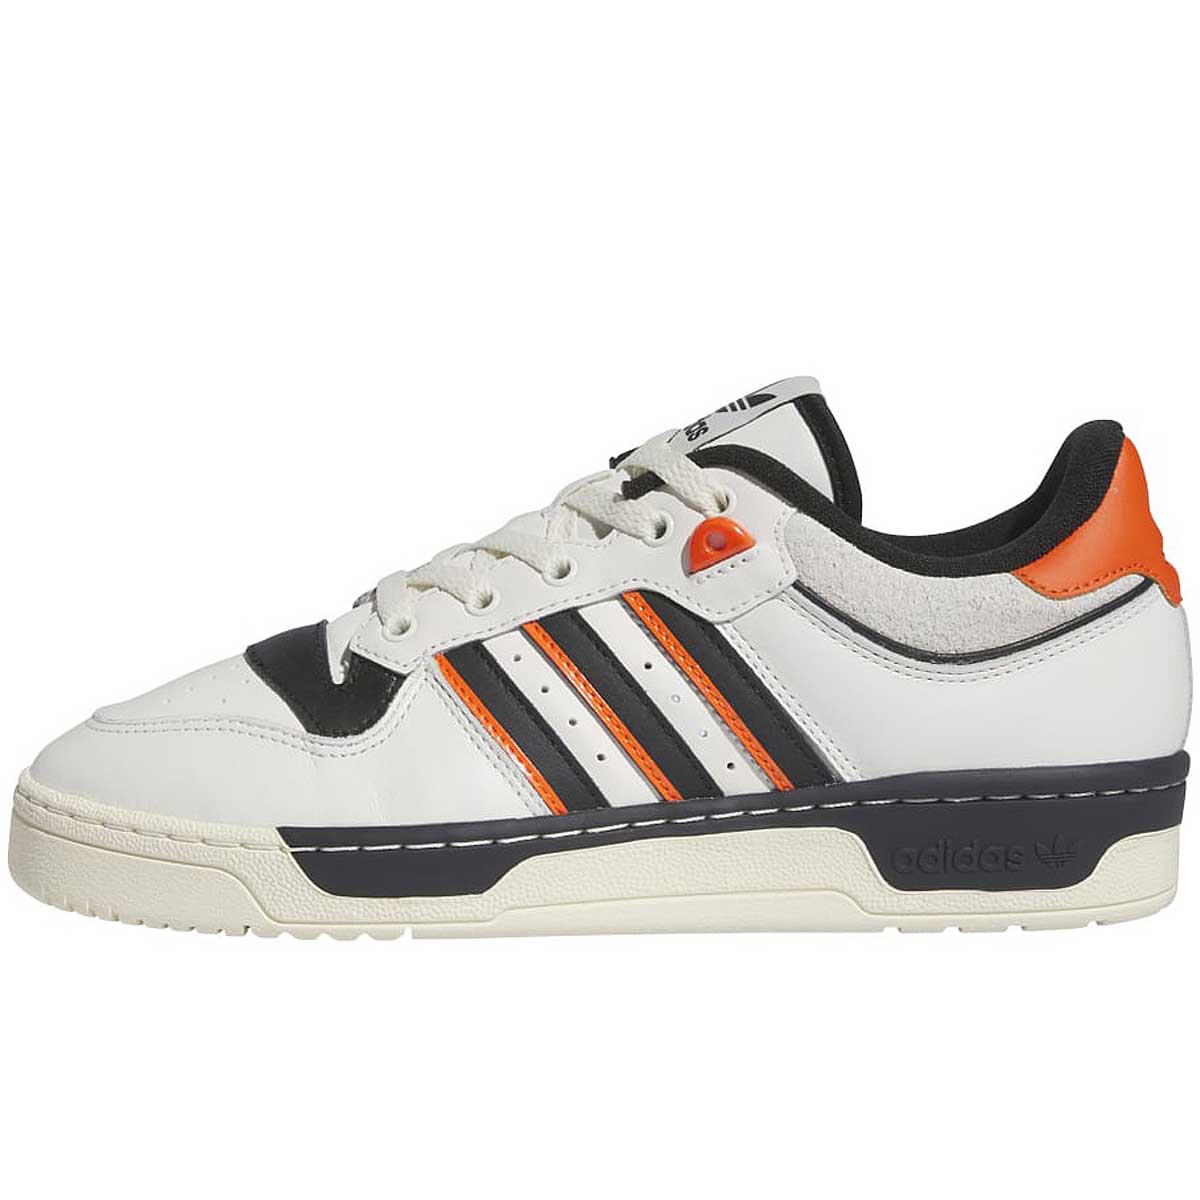 Adidas Rivalry 86 Low, White/black/orange EU40